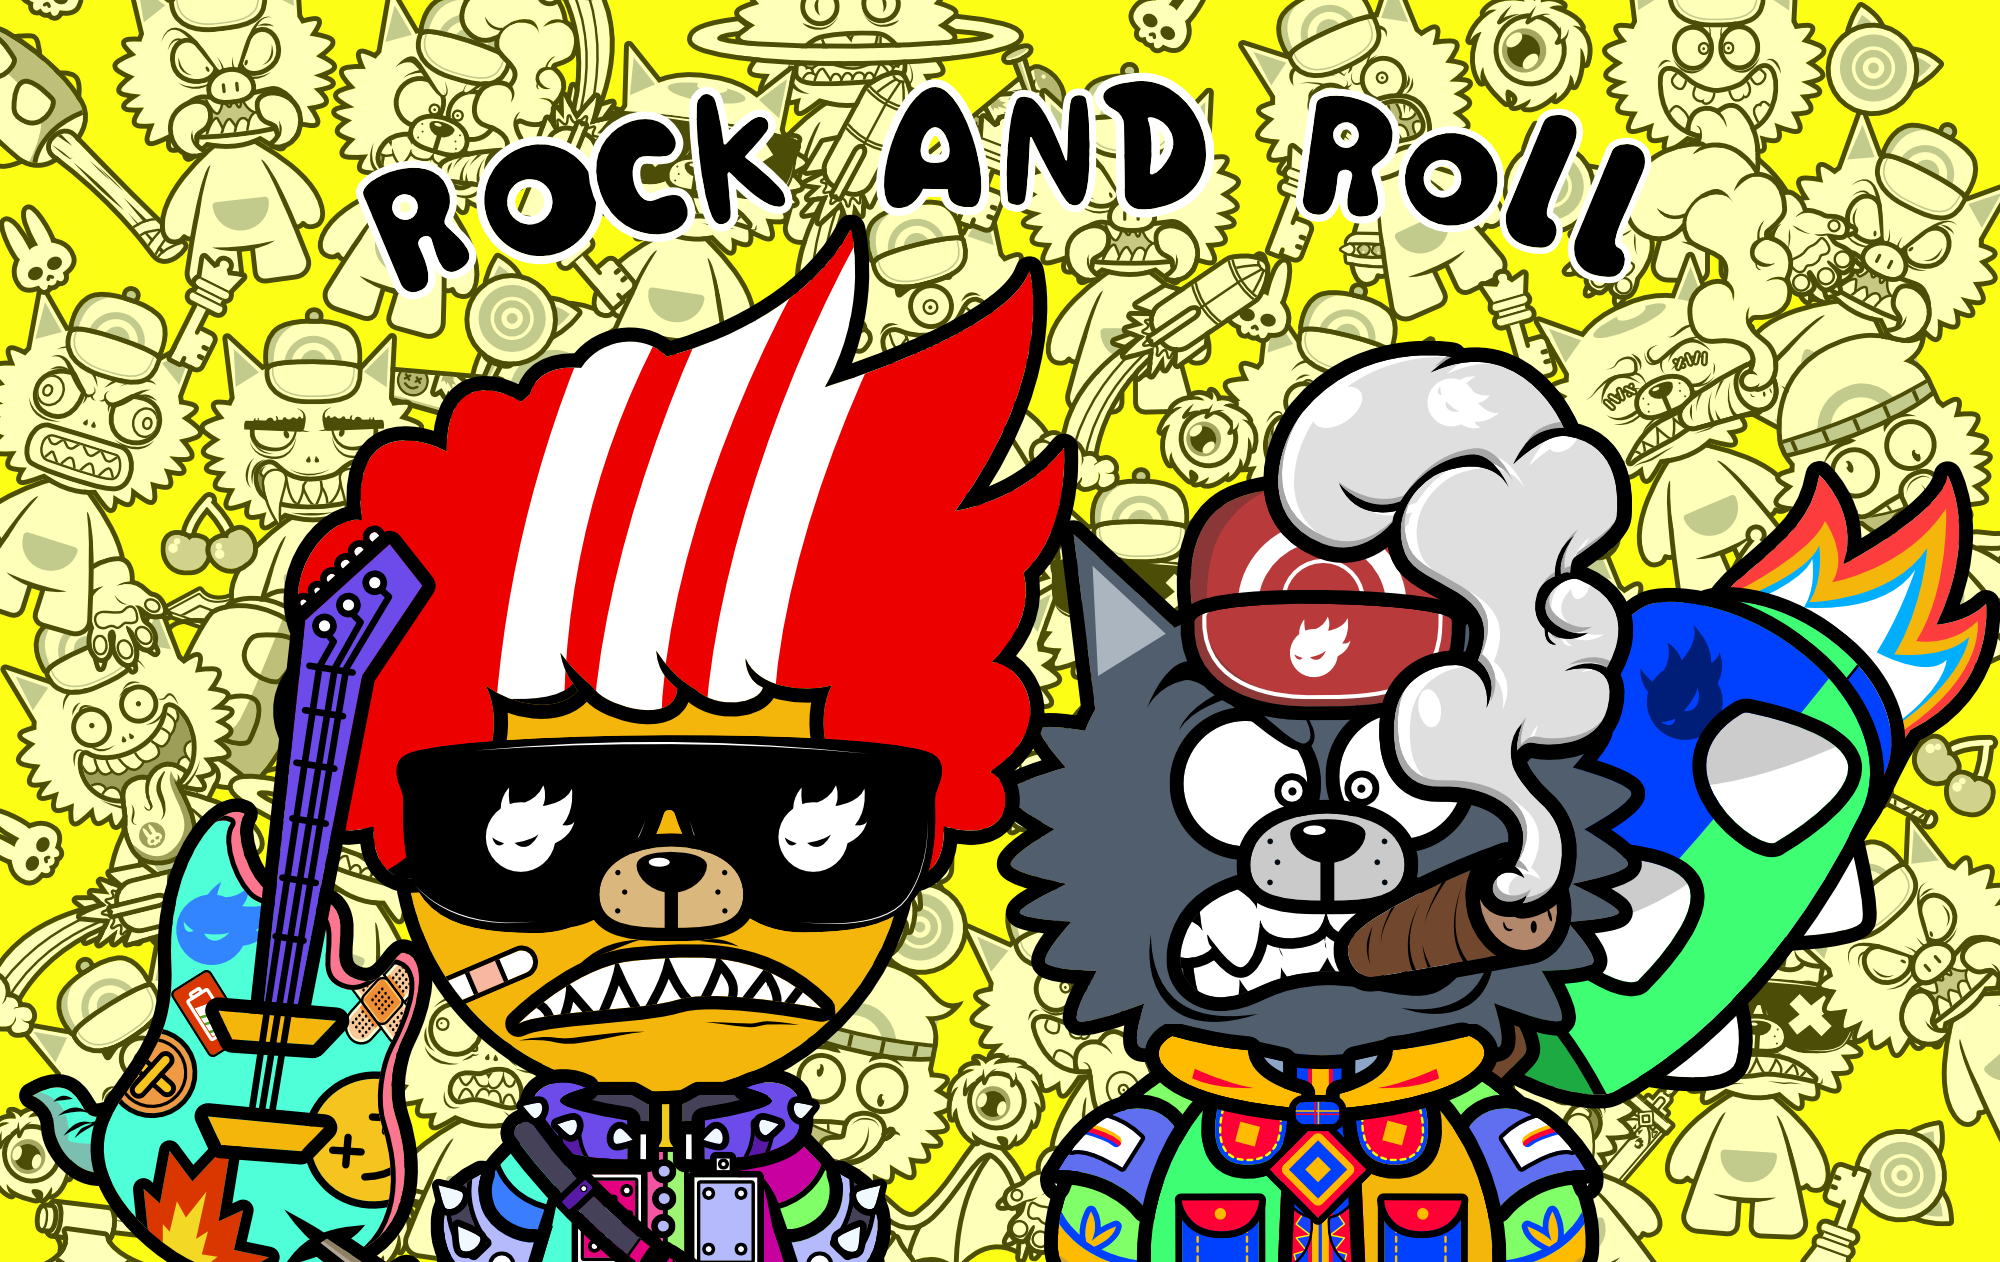 rockand roll图片